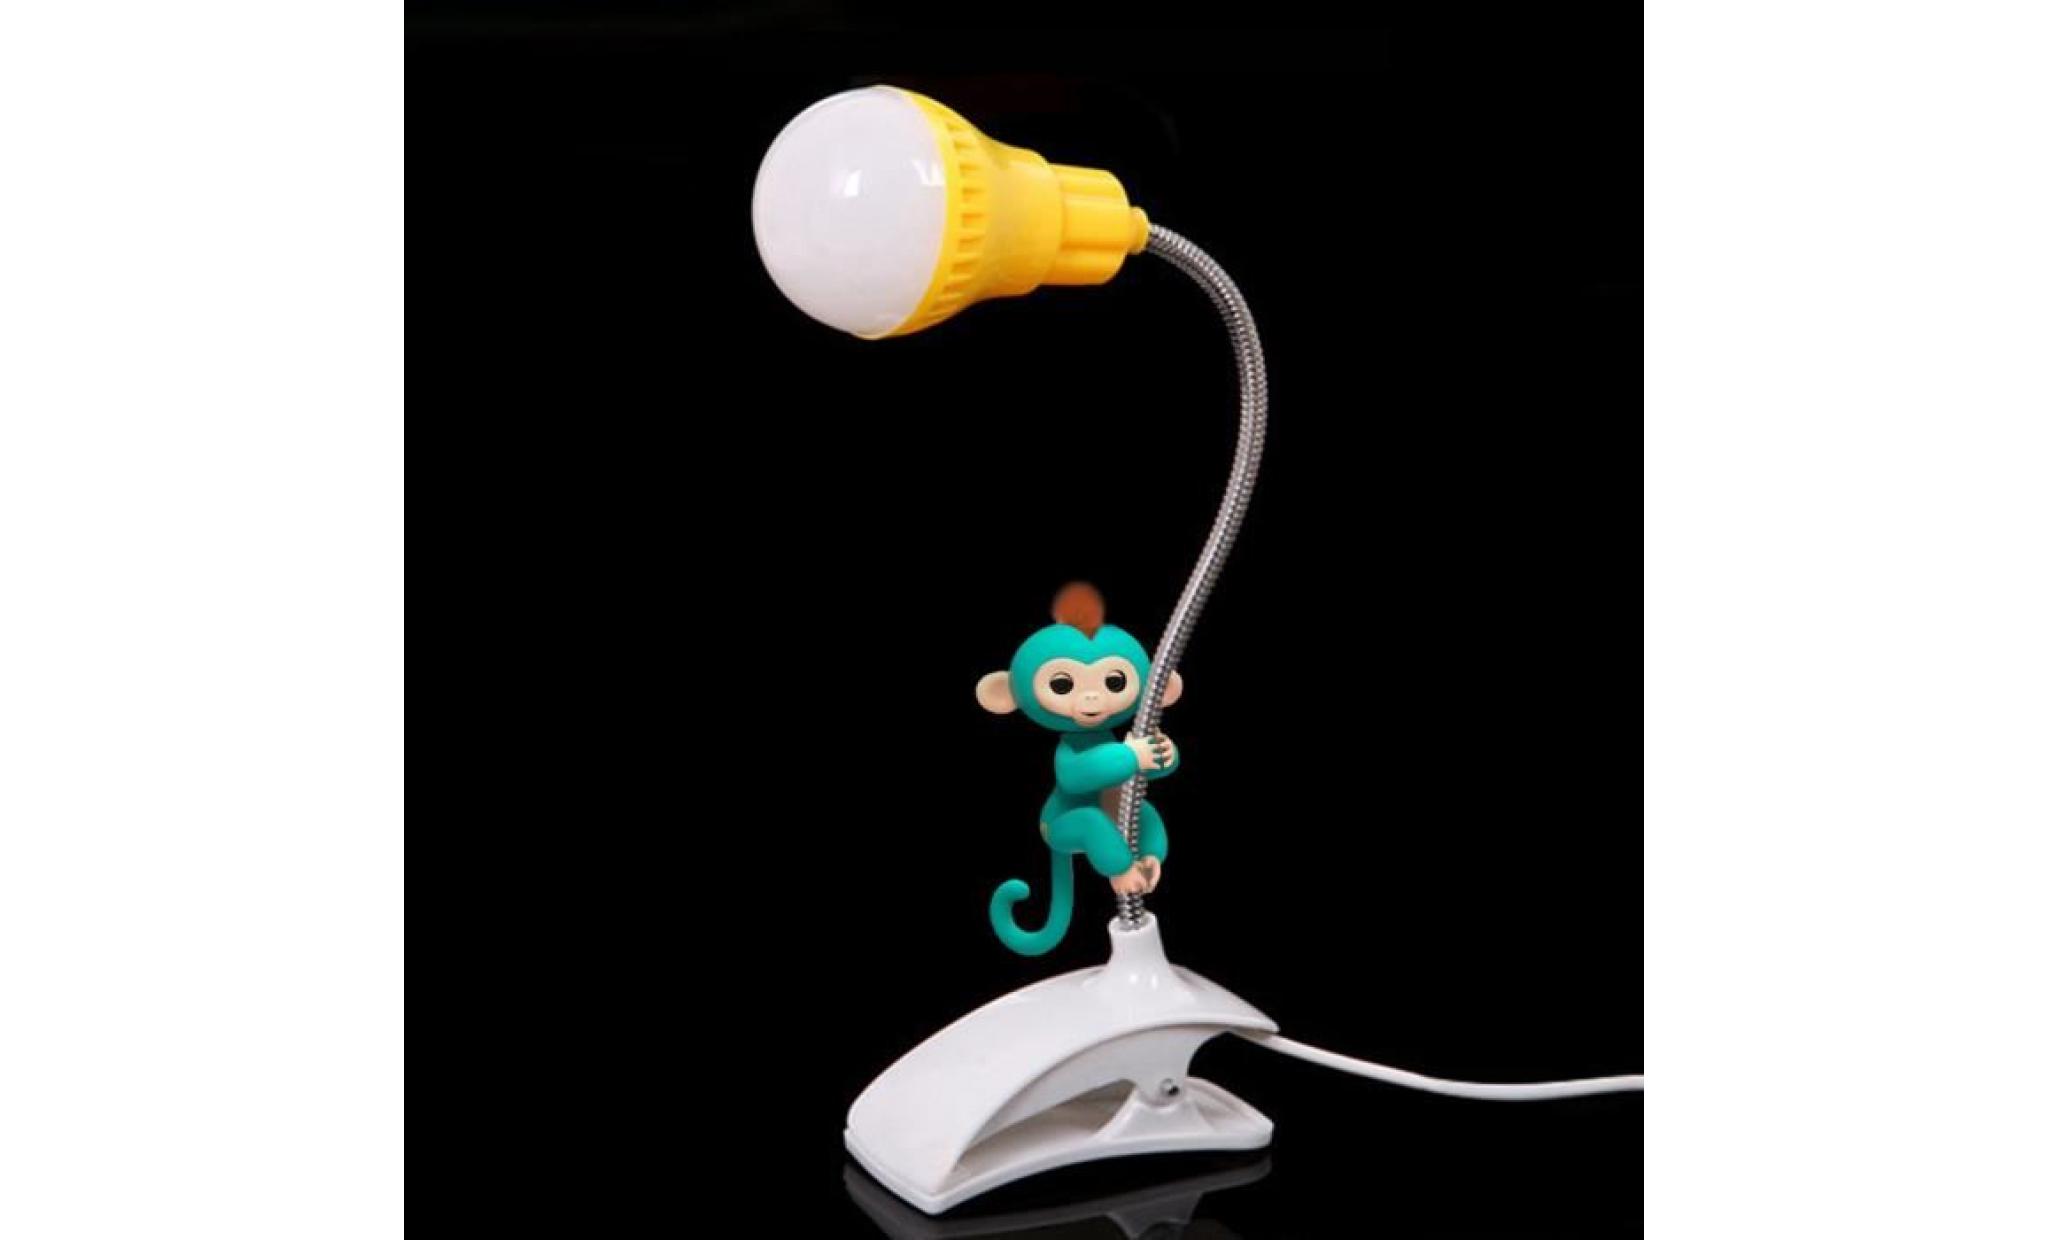 nouveau support de table lampe usb du personnel étudiant de lecture table bureau lampe gn sut4073 pas cher